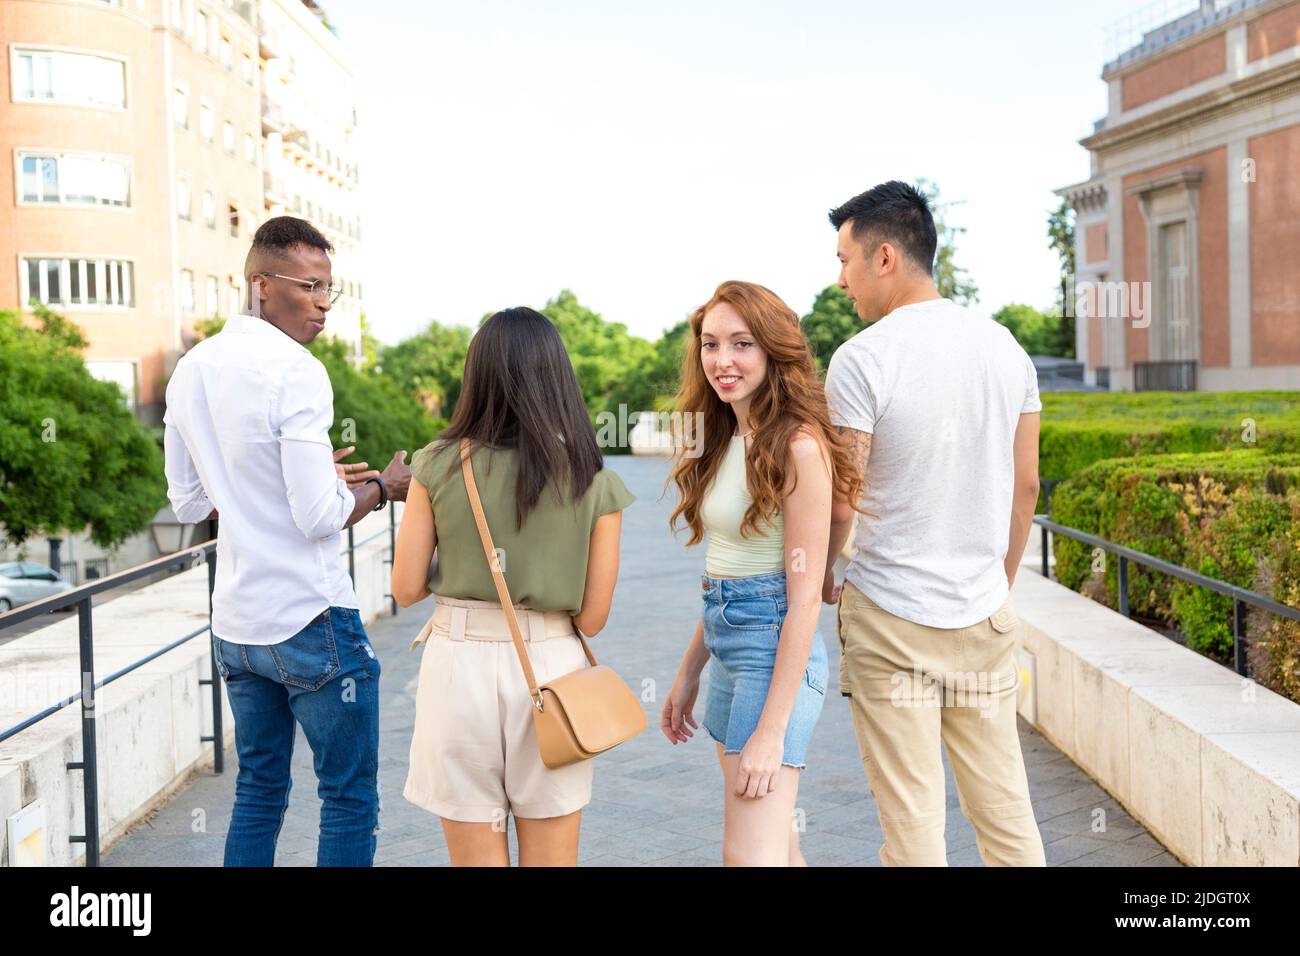 Multiethnische Gruppe von Freunden, die auf der Straße spazieren, während einer von ihnen sich der Kamera zuwendet Stockfoto